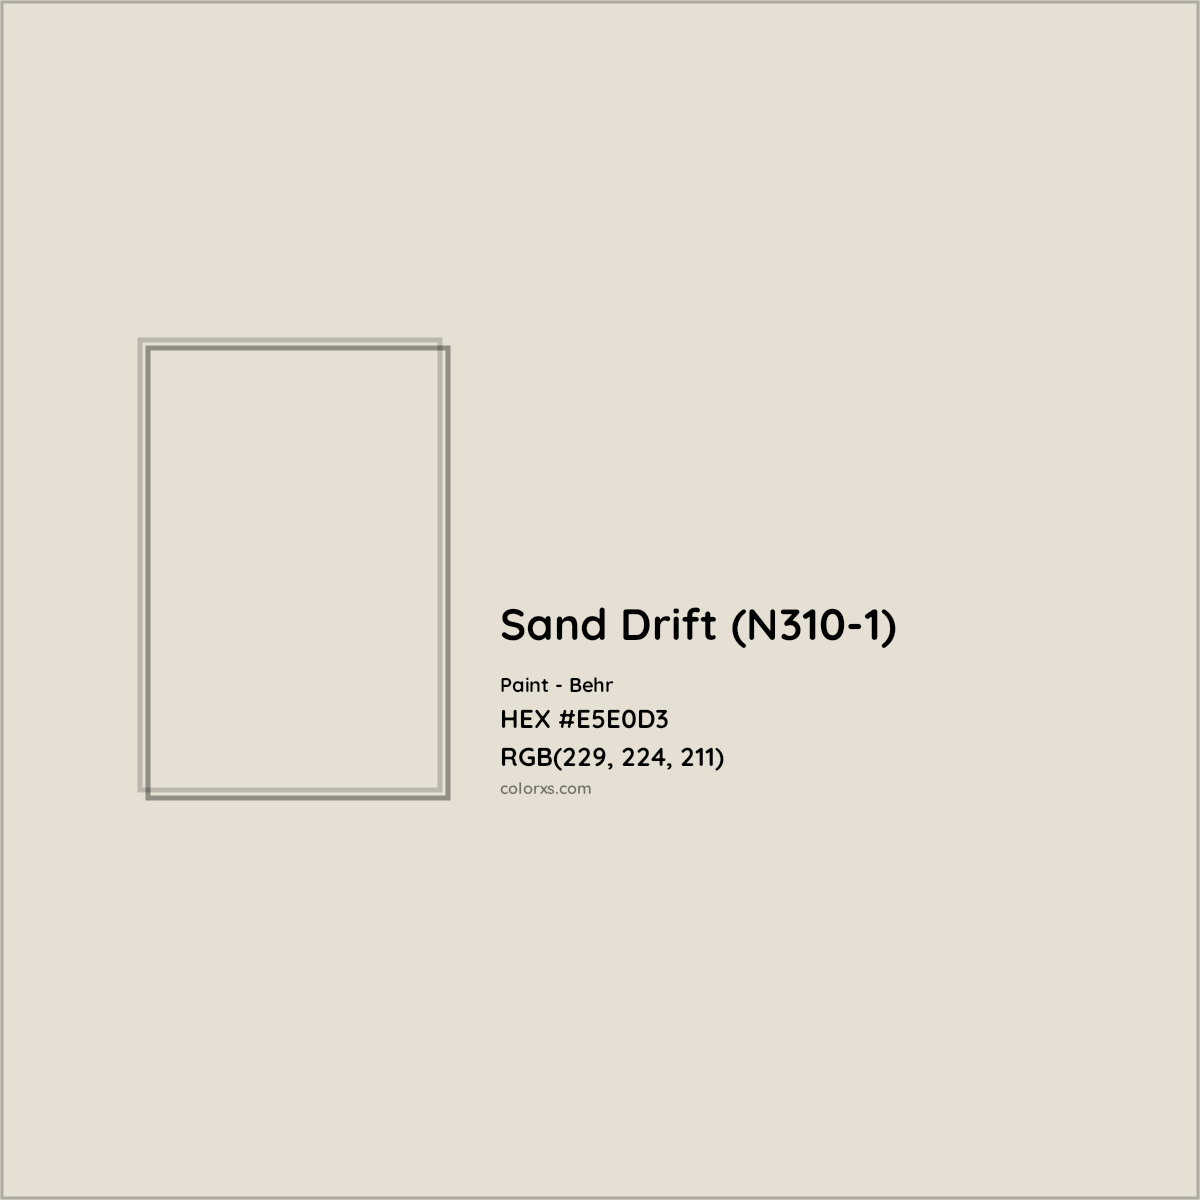 HEX #E5E0D3 Sand Drift (N310-1) Paint Behr - Color Code